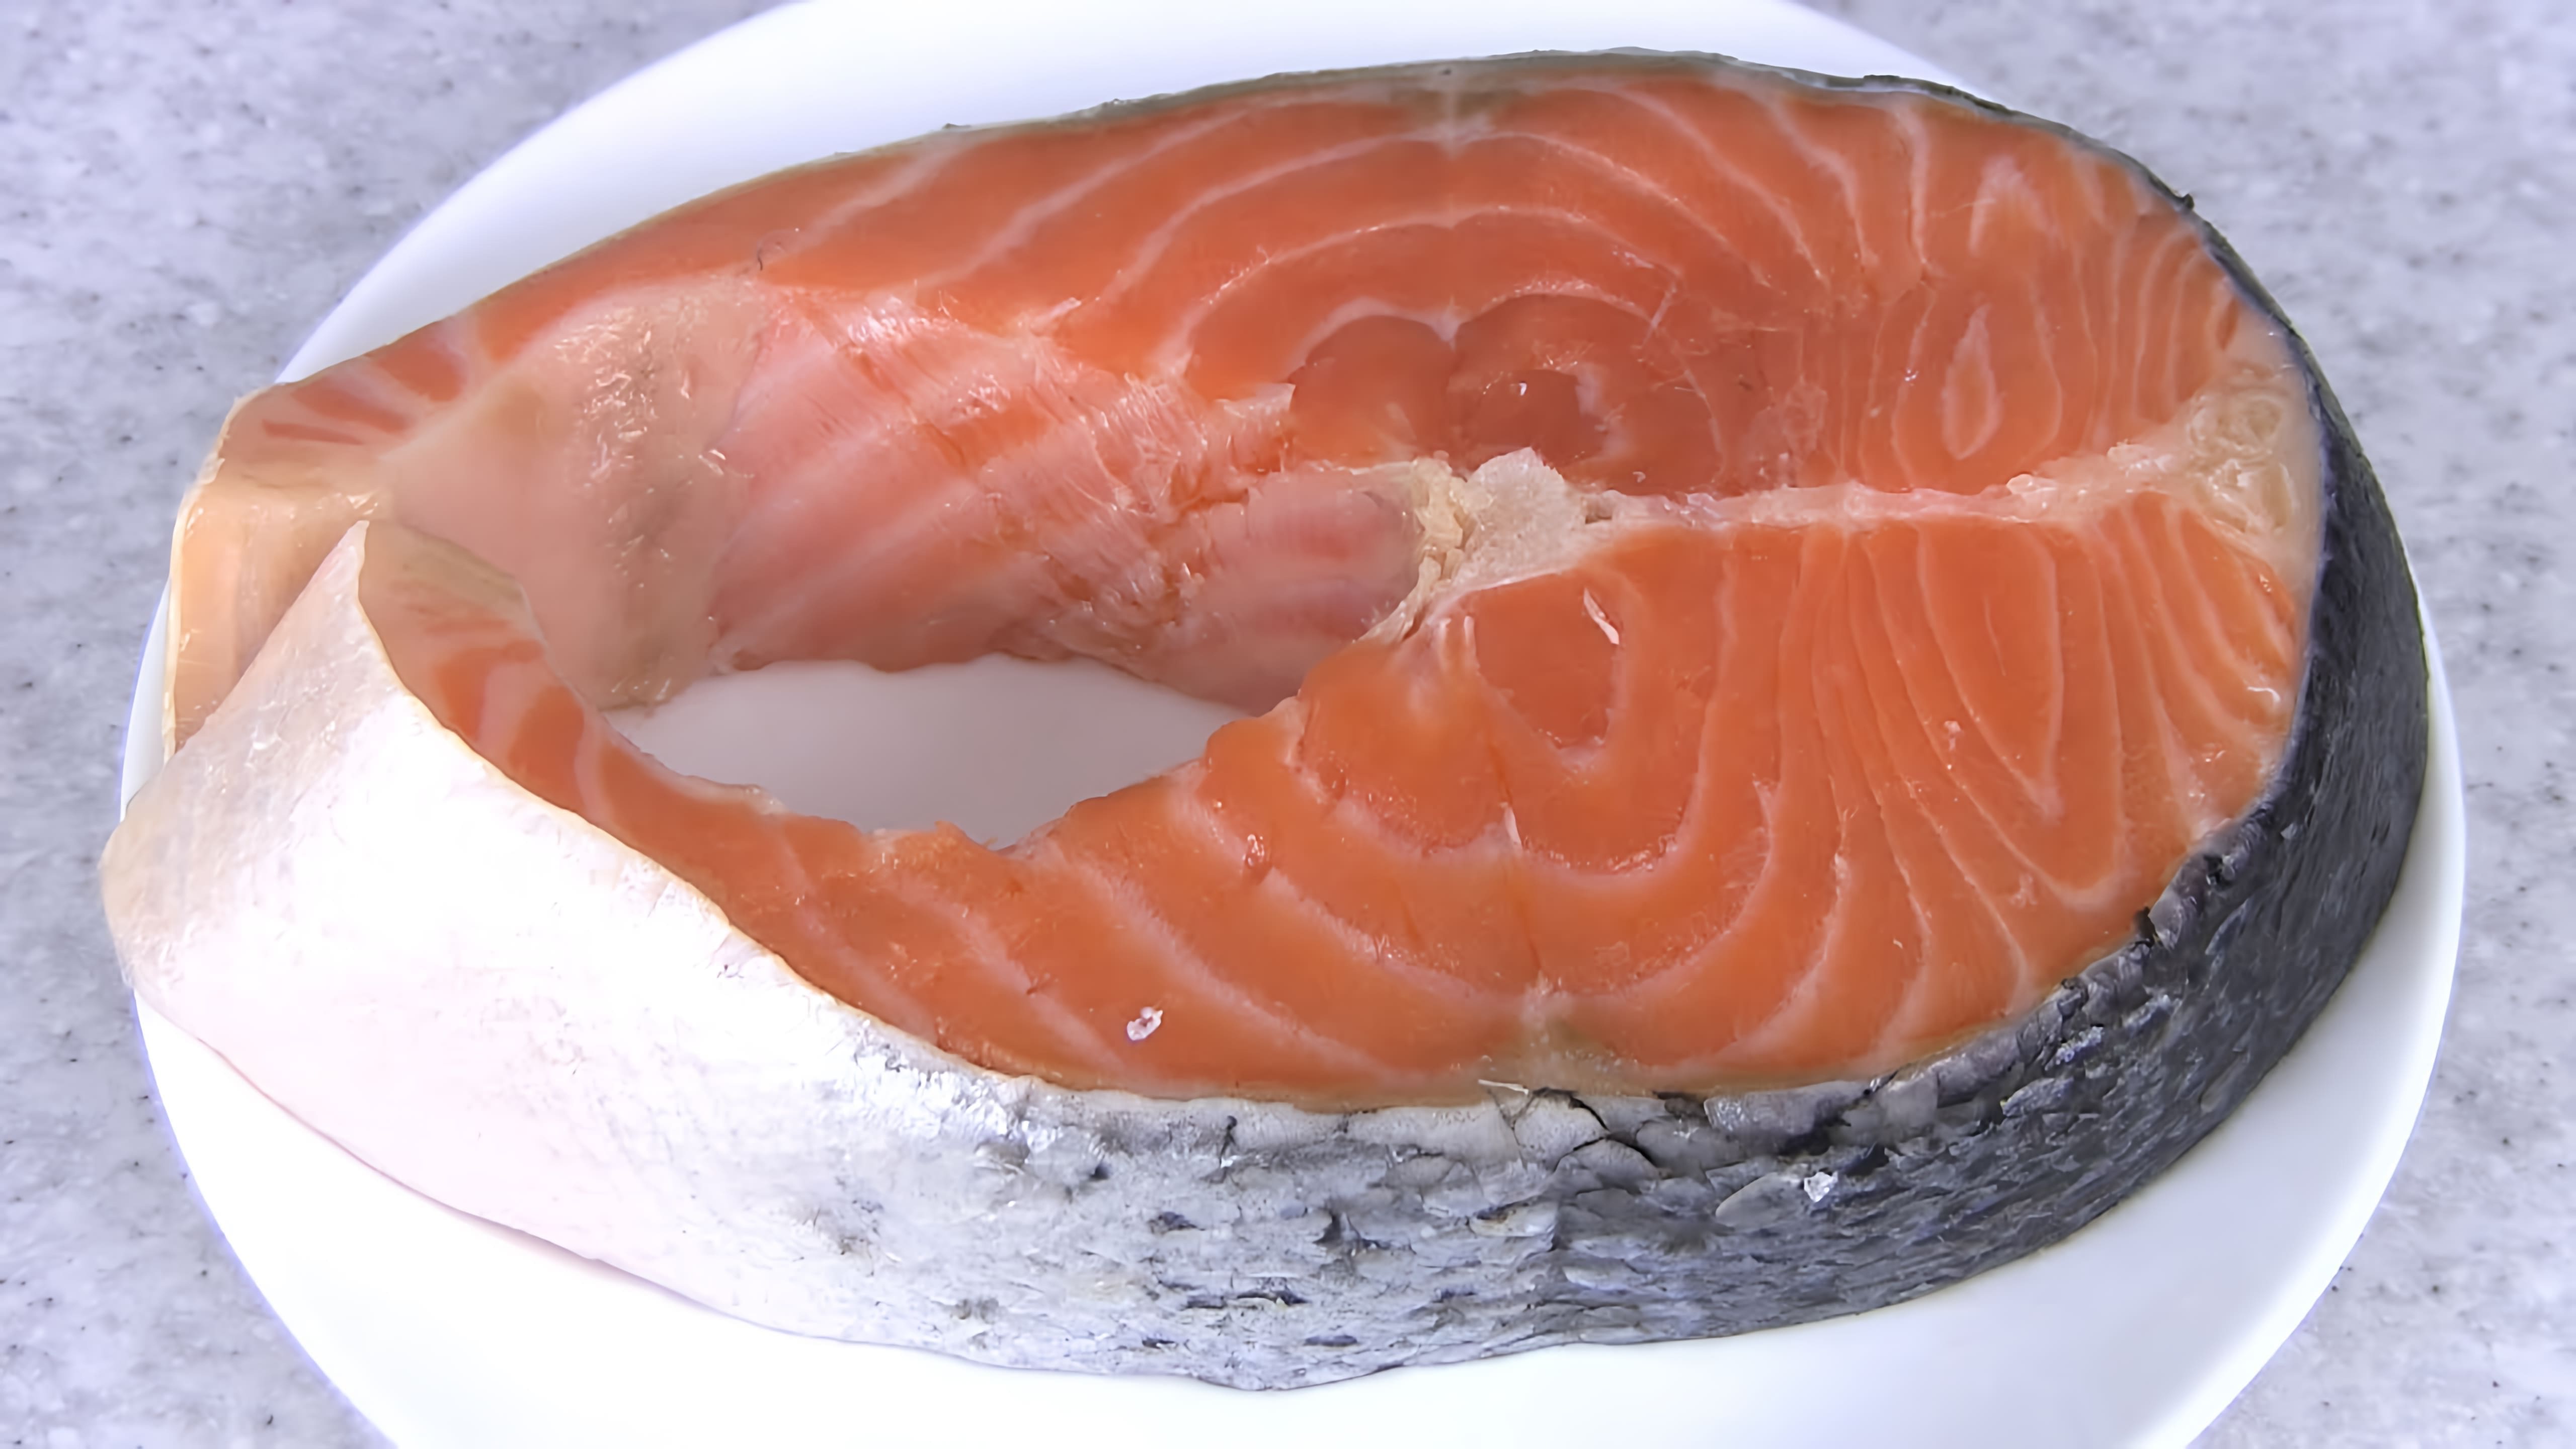 В этом видео демонстрируется процесс засолки красной рыбы, а именно лосося, семги или другой красной рыбы